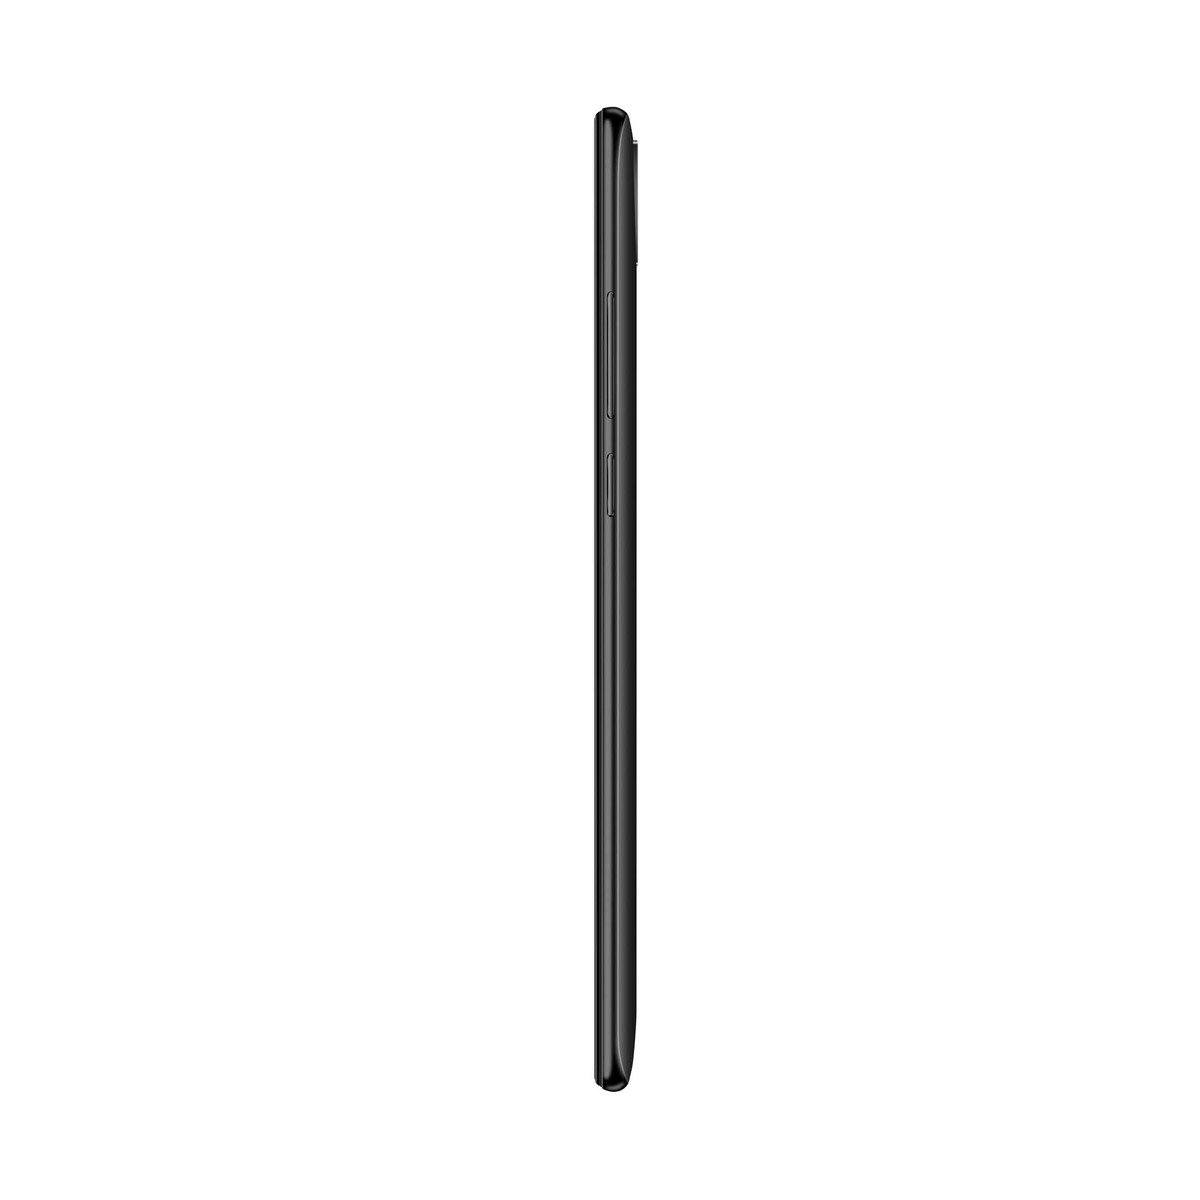 Lenovo A7 32GB Black